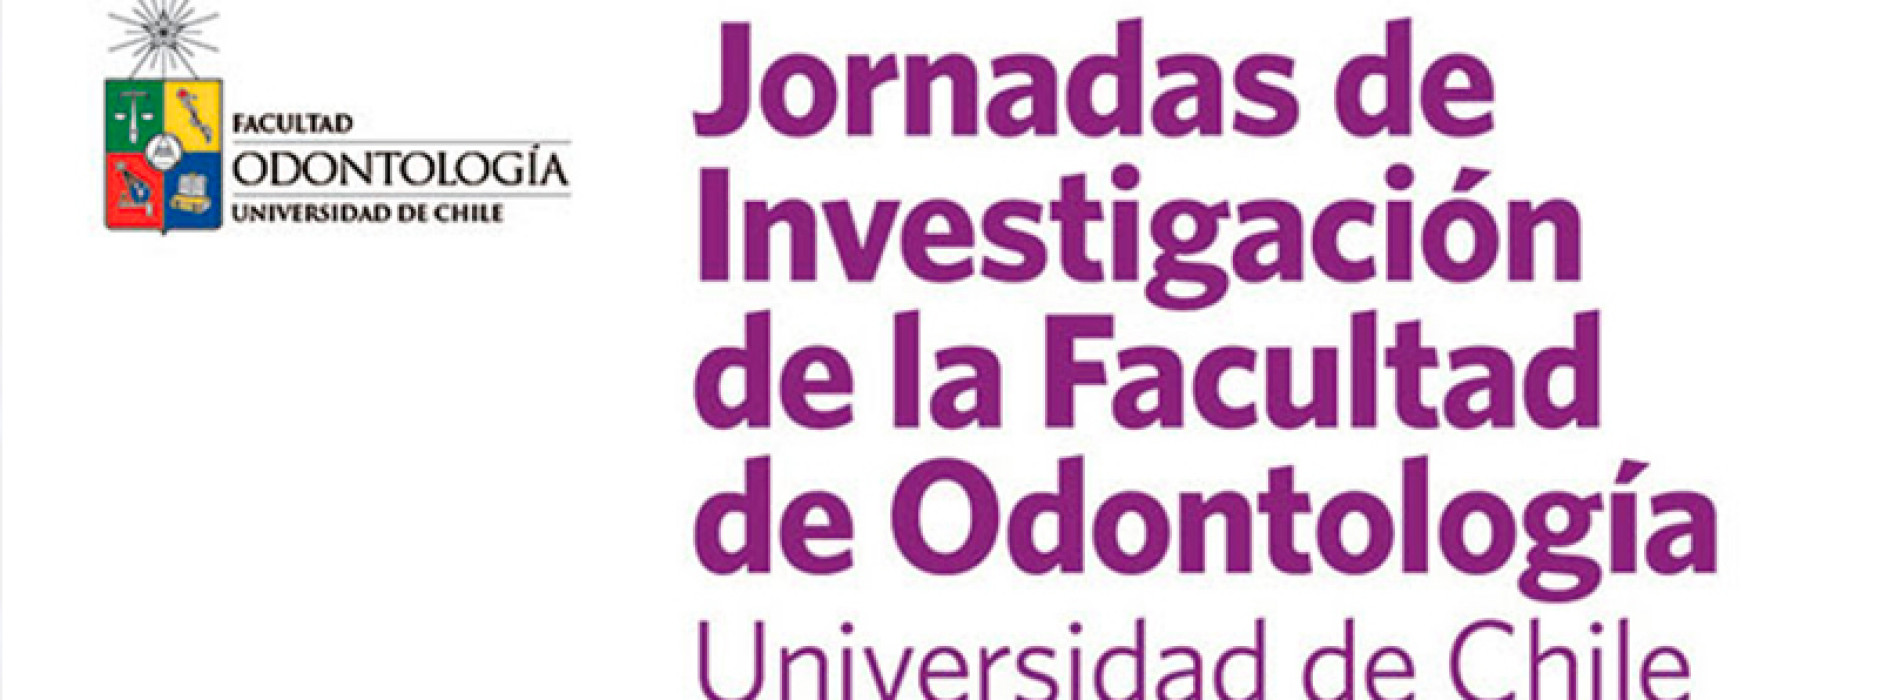 Jornadas de Investigación de la Facultad de Odontología Universidad de Chile